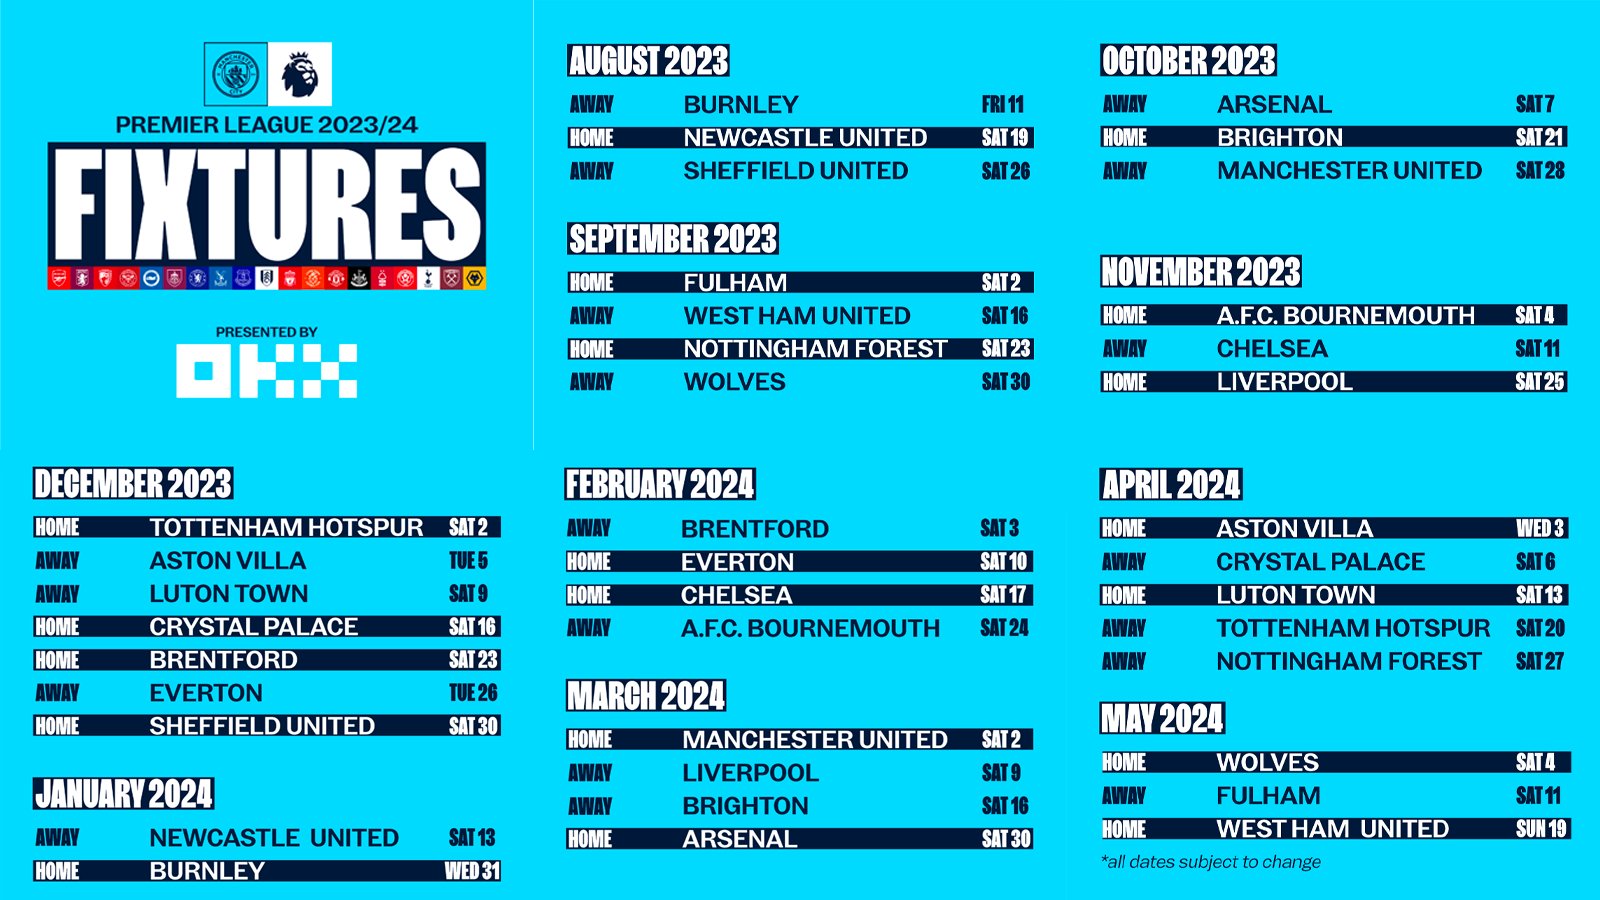 Premier League 2023/24 fixtures, dates, schedule: Arsenal vs Man City